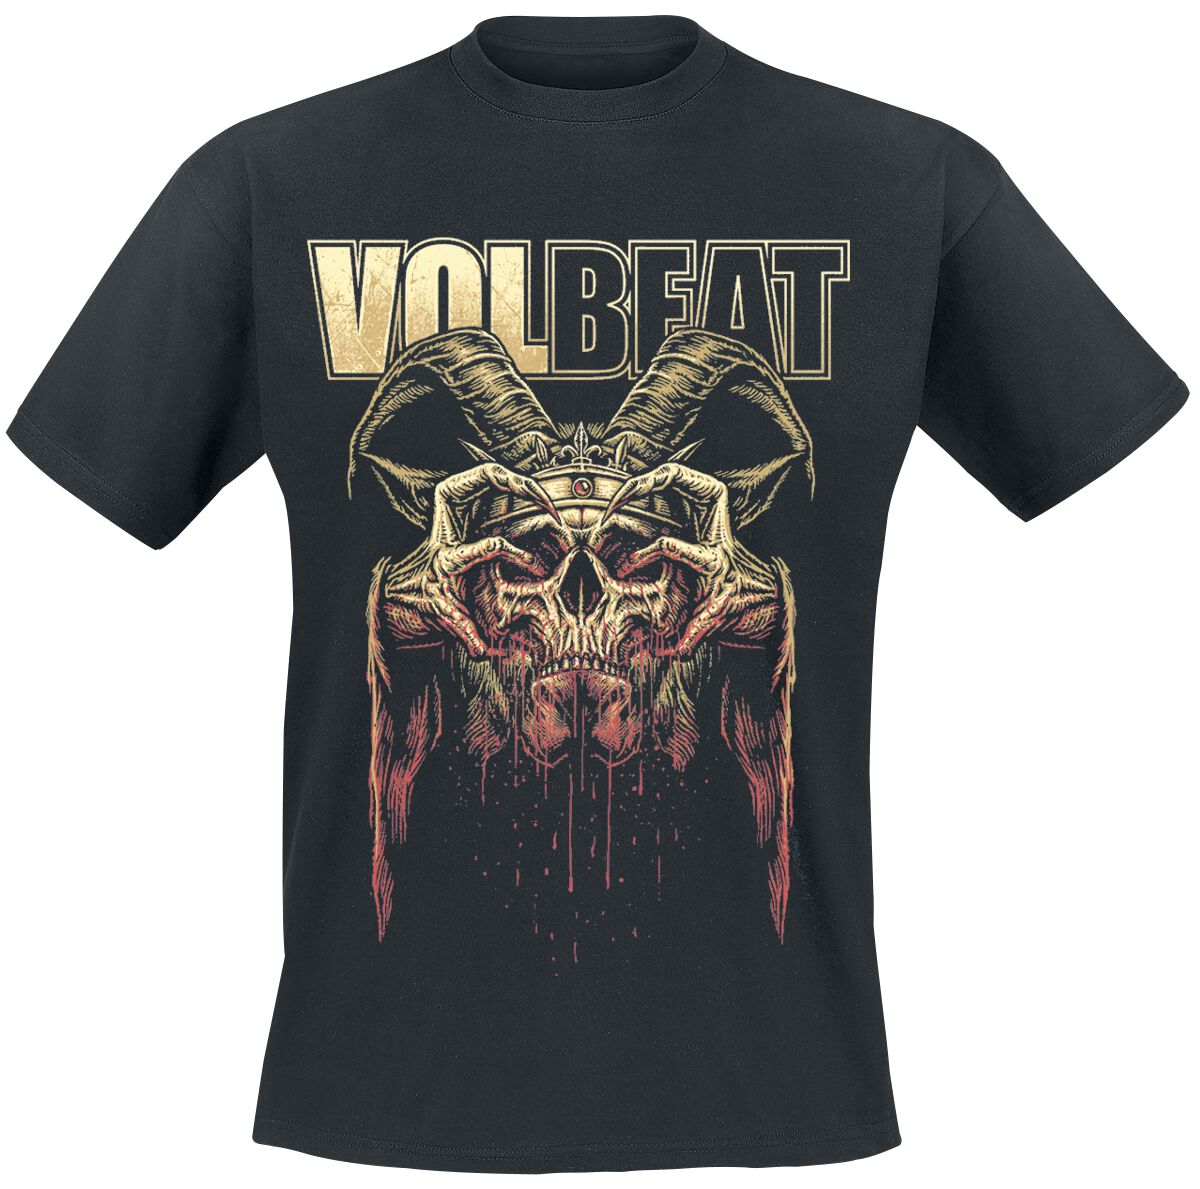 Volbeat T-Shirt - Bleeding Crown Skull - S bis 4XL - für Männer - Größe 4XL - schwarz  - EMP exklusives Merchandise!